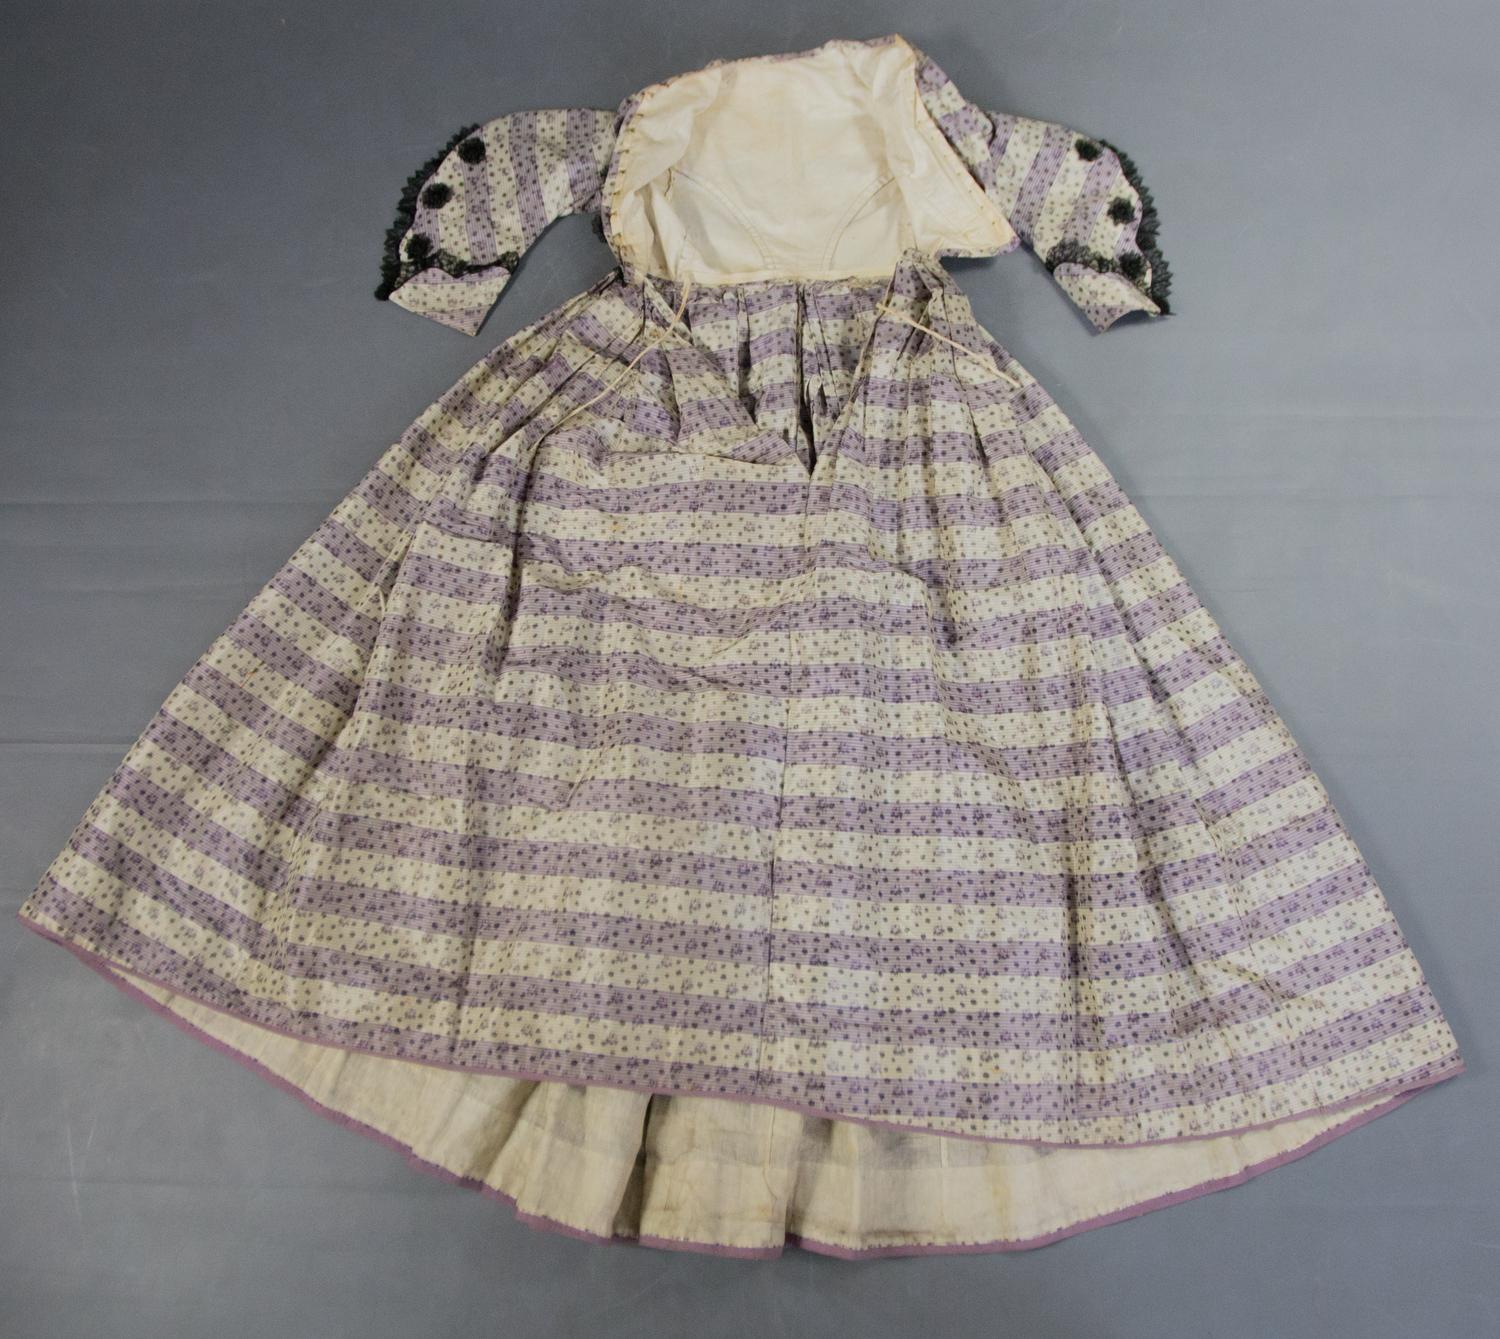 1855 dress